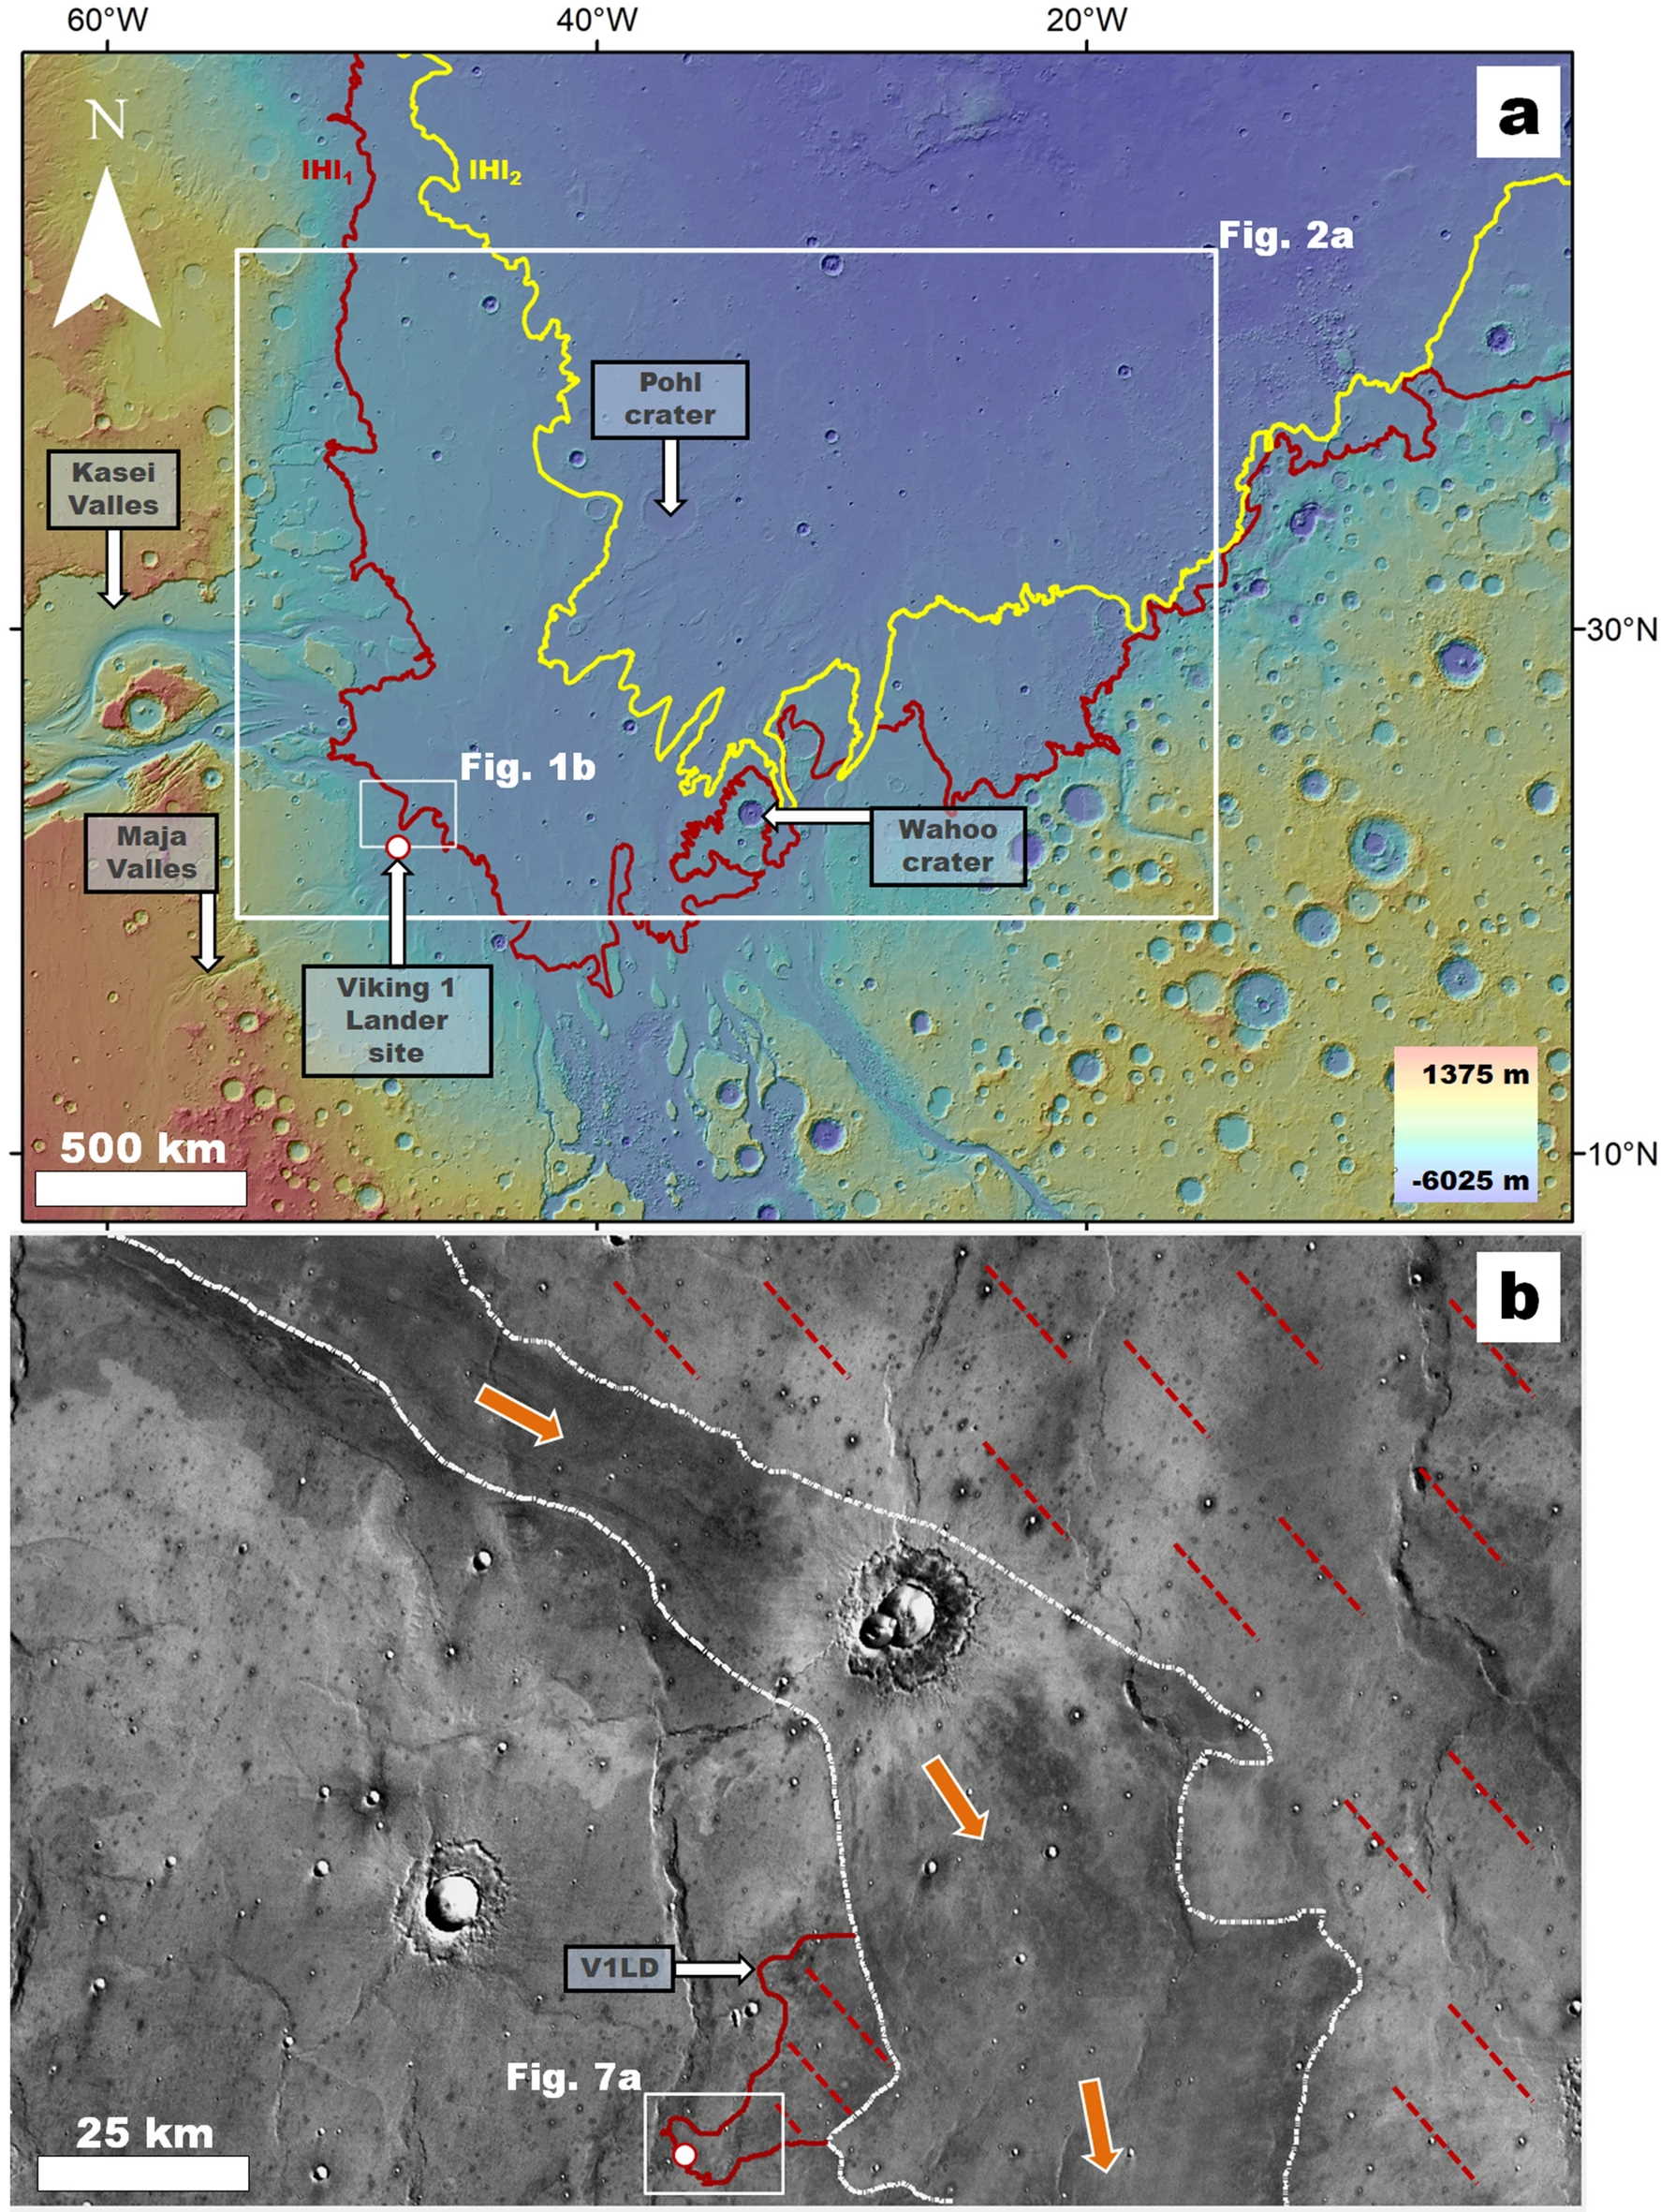 Регіон Chryse Planitia, де червоним позначено межі давнього цунамі, а також місце посадки «Вікінг-1». J. Alexis P. Rodriguez et al. / Scientific Reports, 2022